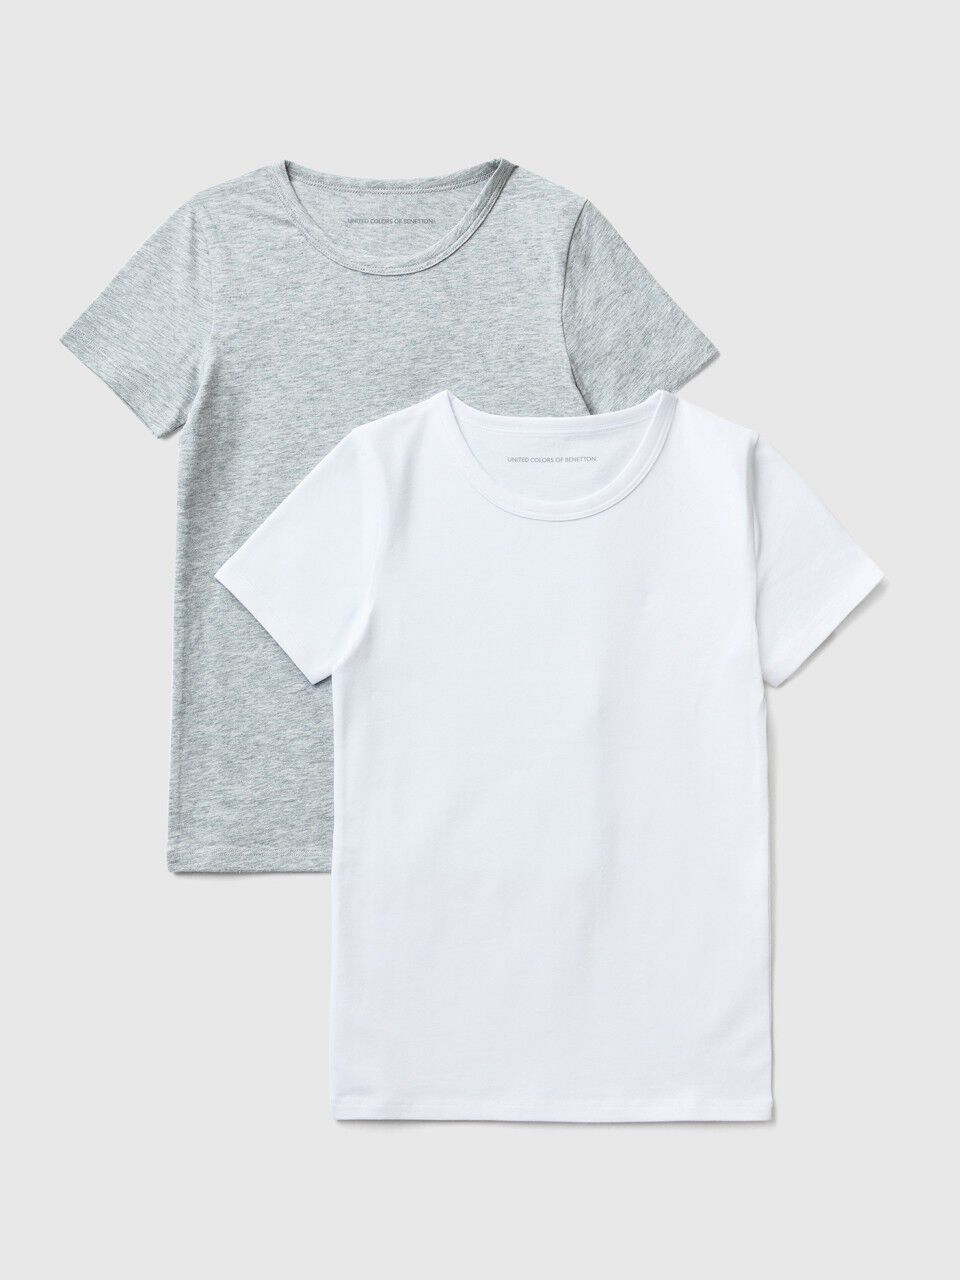 Zwei T-Shirts aus stretchiger Baumwolle